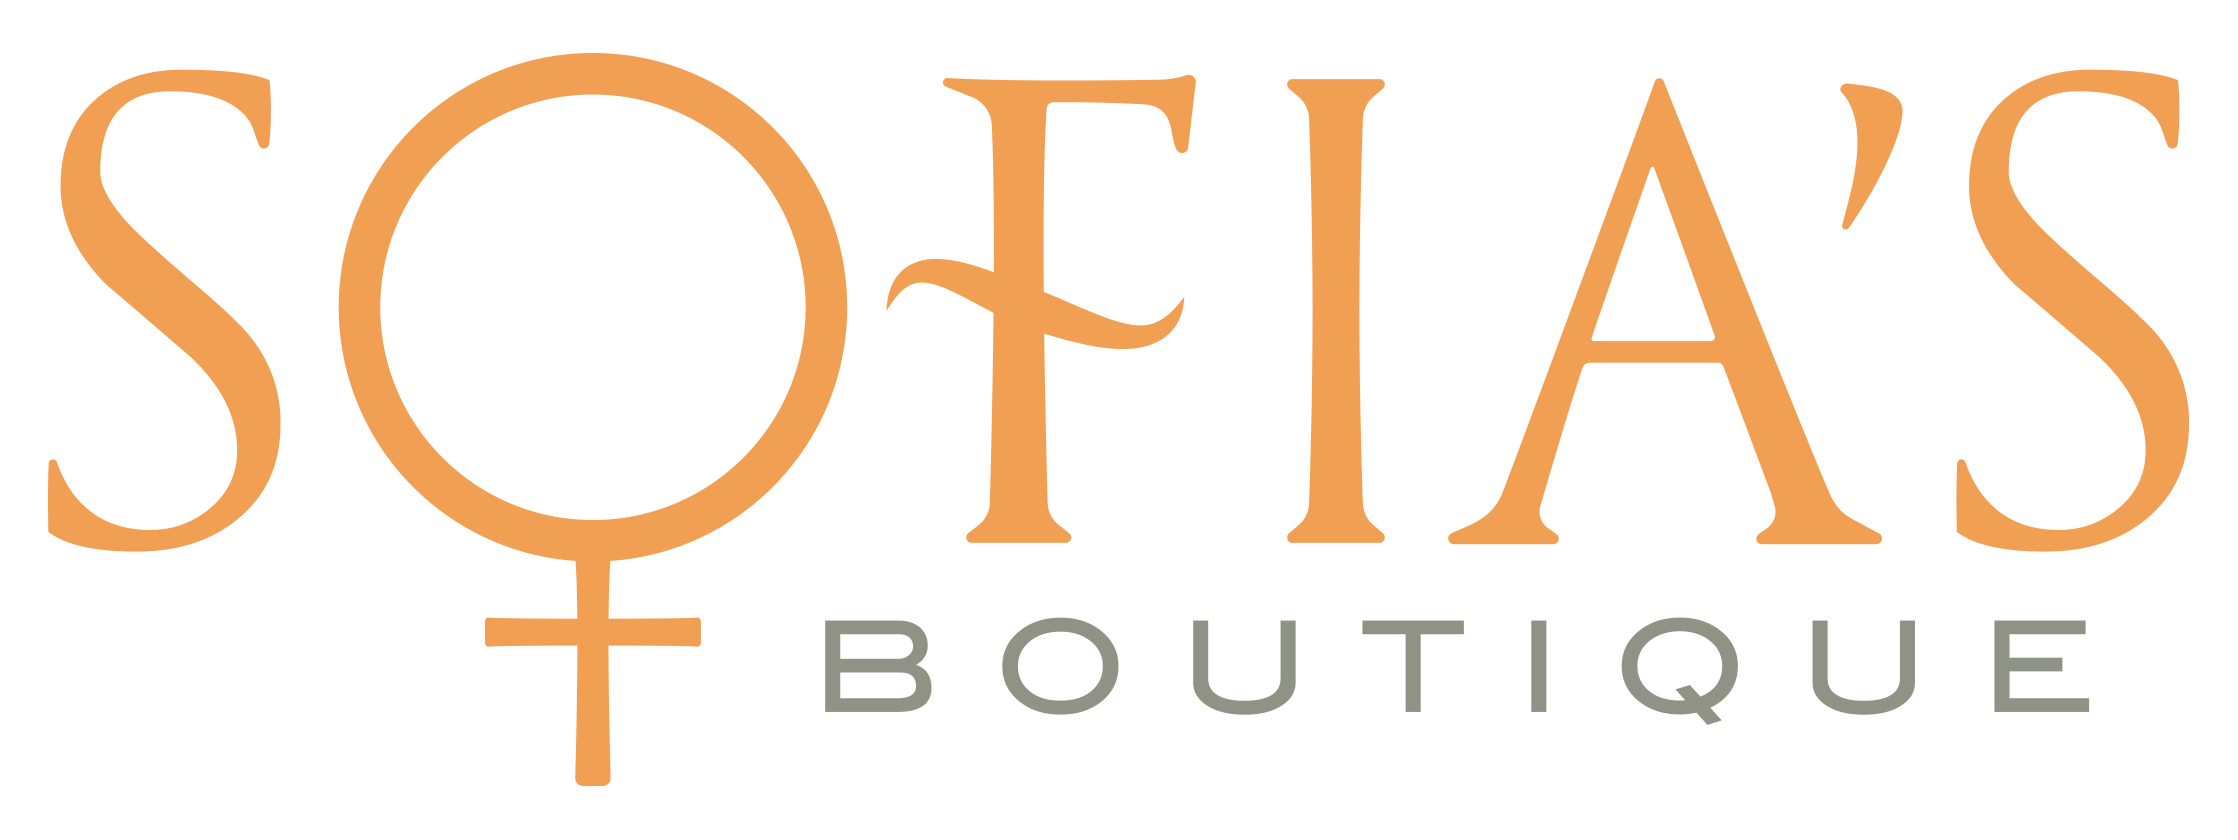 Sofia's Boutique, Inc